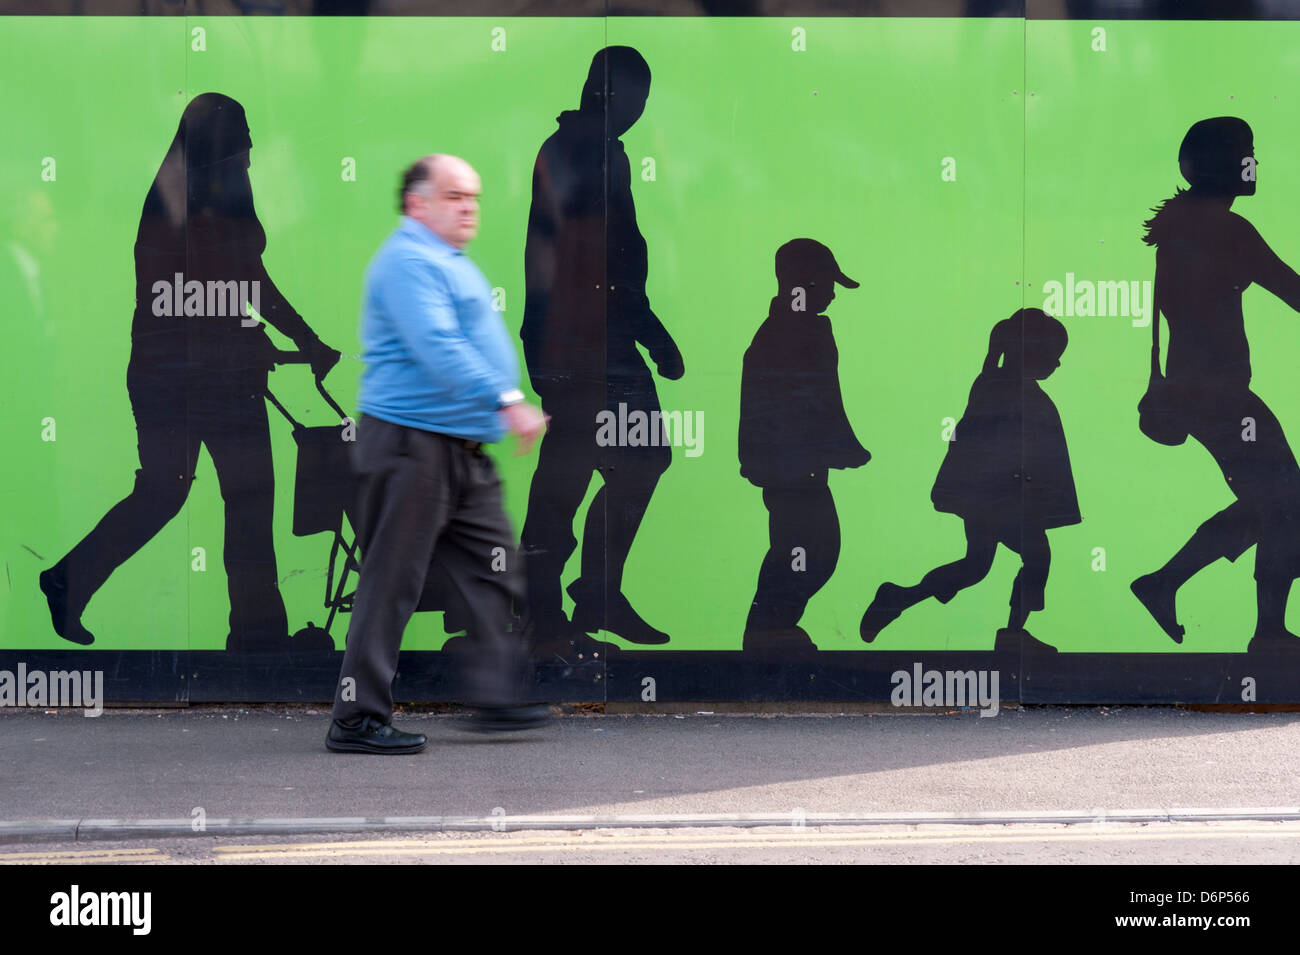 Echte Menschen zu Fuß vor einer Stadt Wandbild die Silhouetten von Menschen zu Fuß im Hintergrund in Cambridge UK gemalt hat Stockfoto